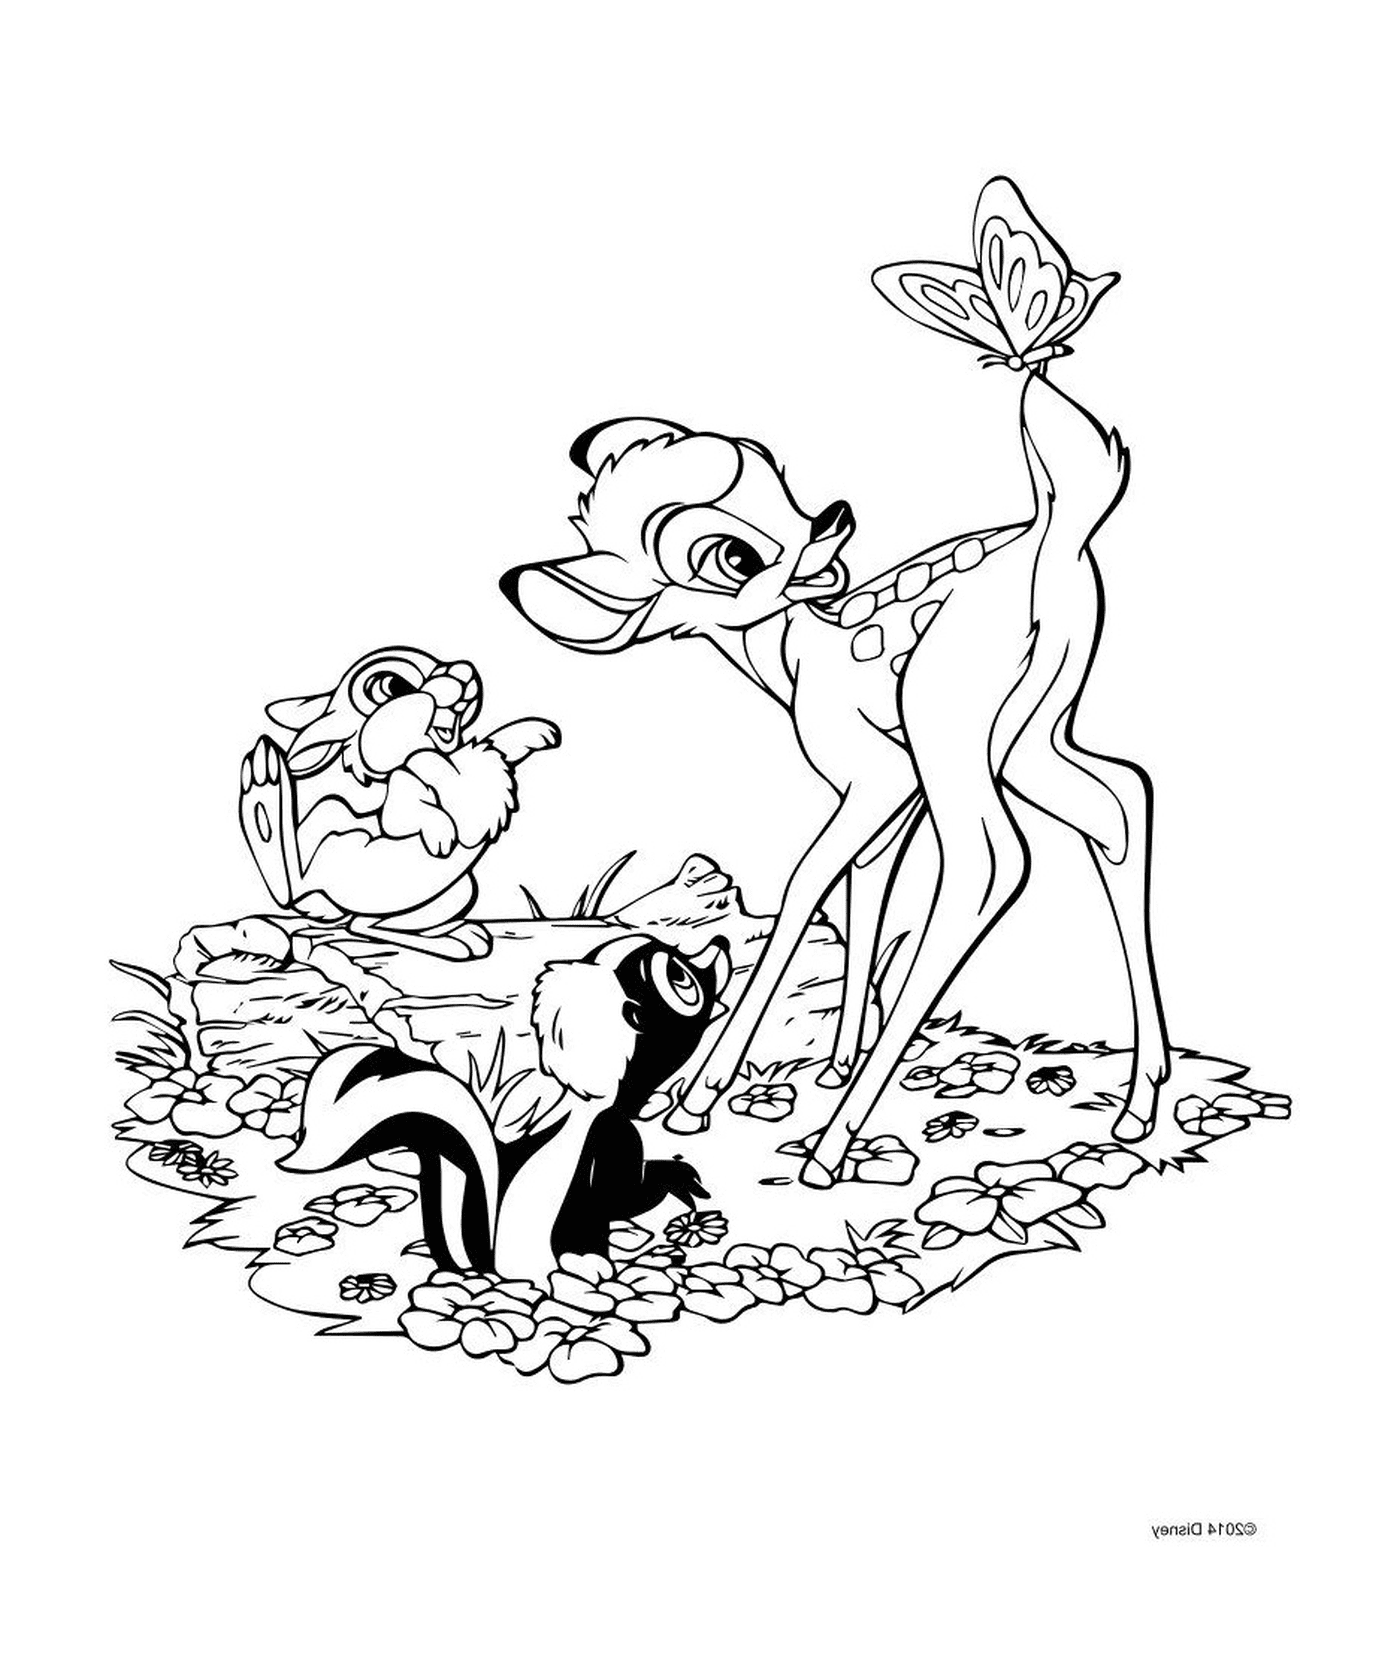  Bambi und Panpan, eine ungeschickte Freundschaft 